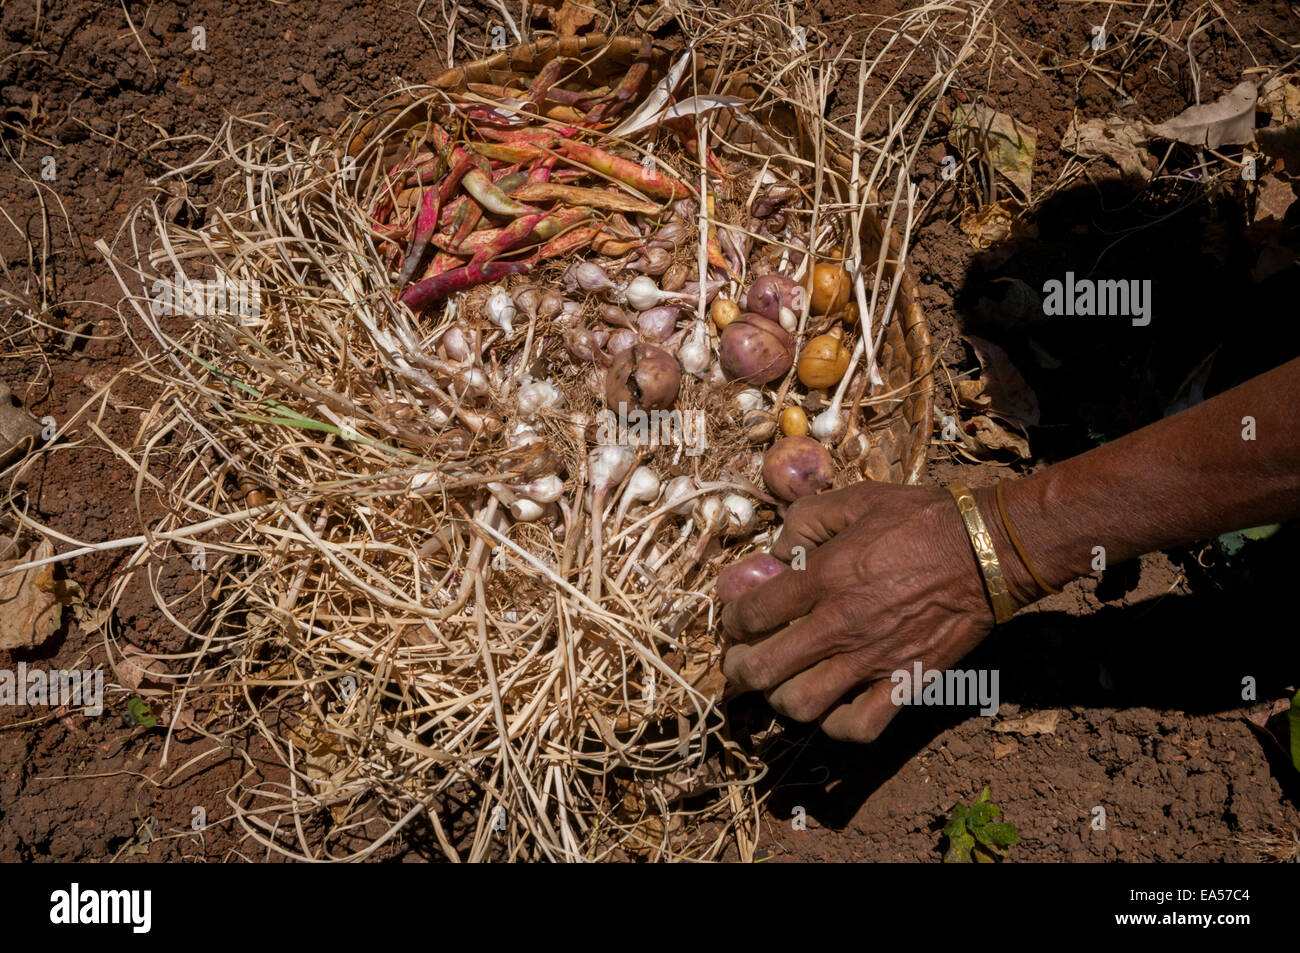 Yuliana Fuka raccogliendo varie colture sul suo terreno agricolo durante la stagione secca nel villaggio di Fatumnasi, Timor centro-meridionale, Nusa Tenggara orientale, Indonesia. Foto Stock